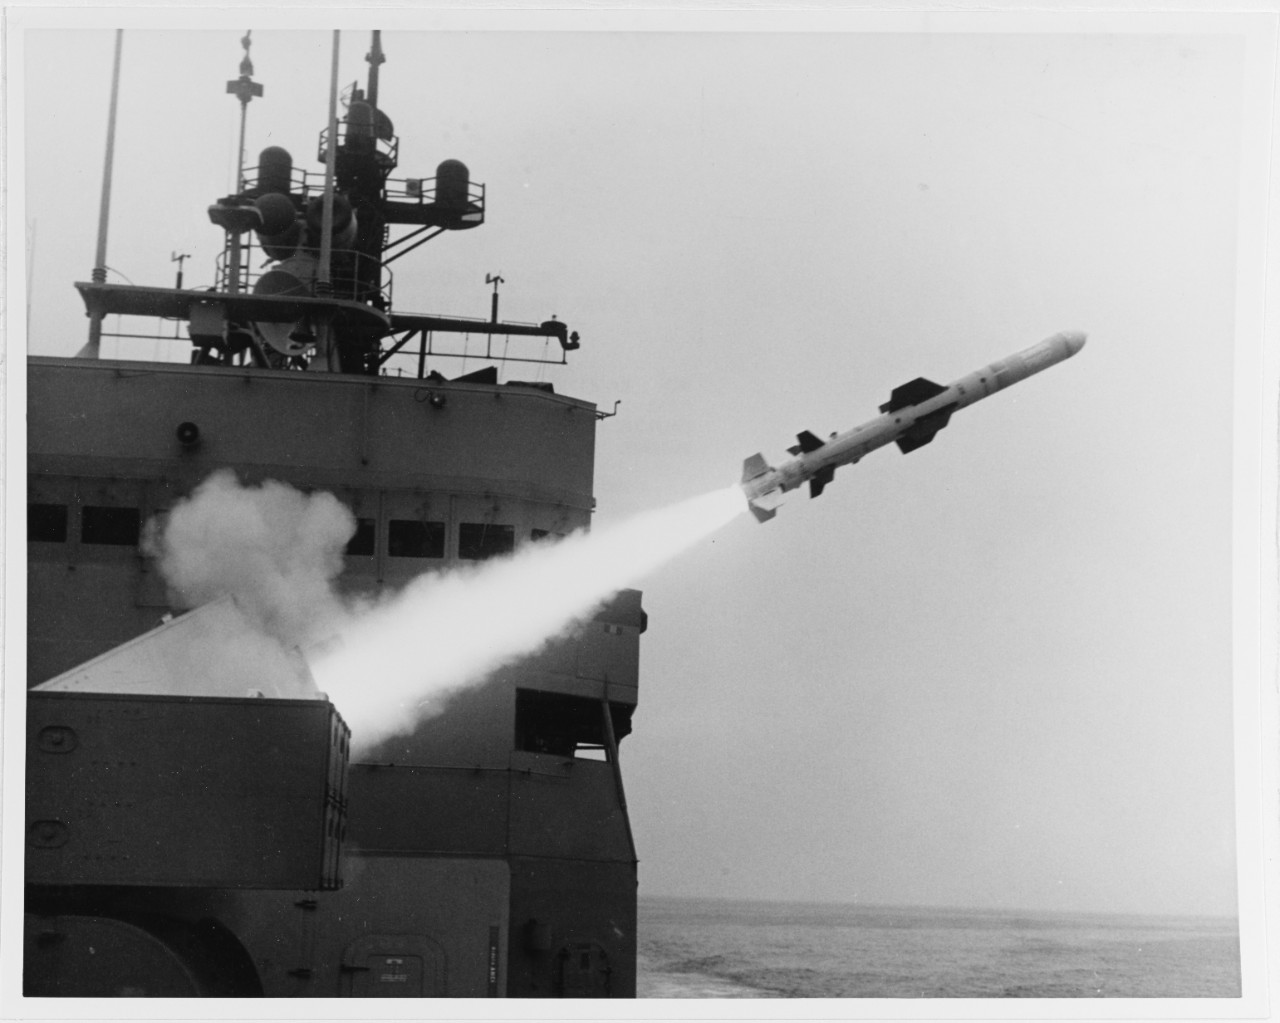 RGM-84-1 Harpoon Missile